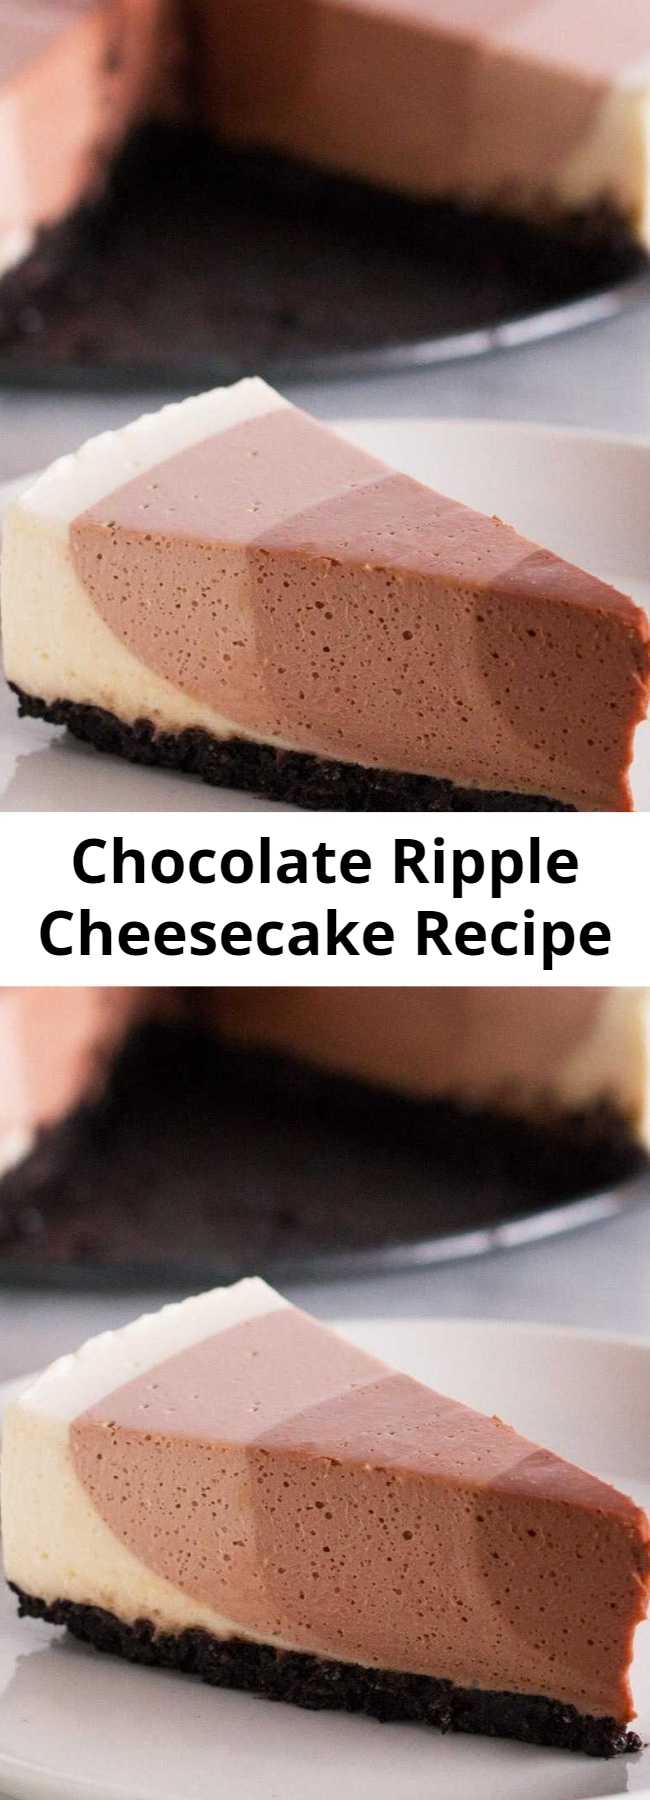 Chocolate Ripple Cheesecake Recipe